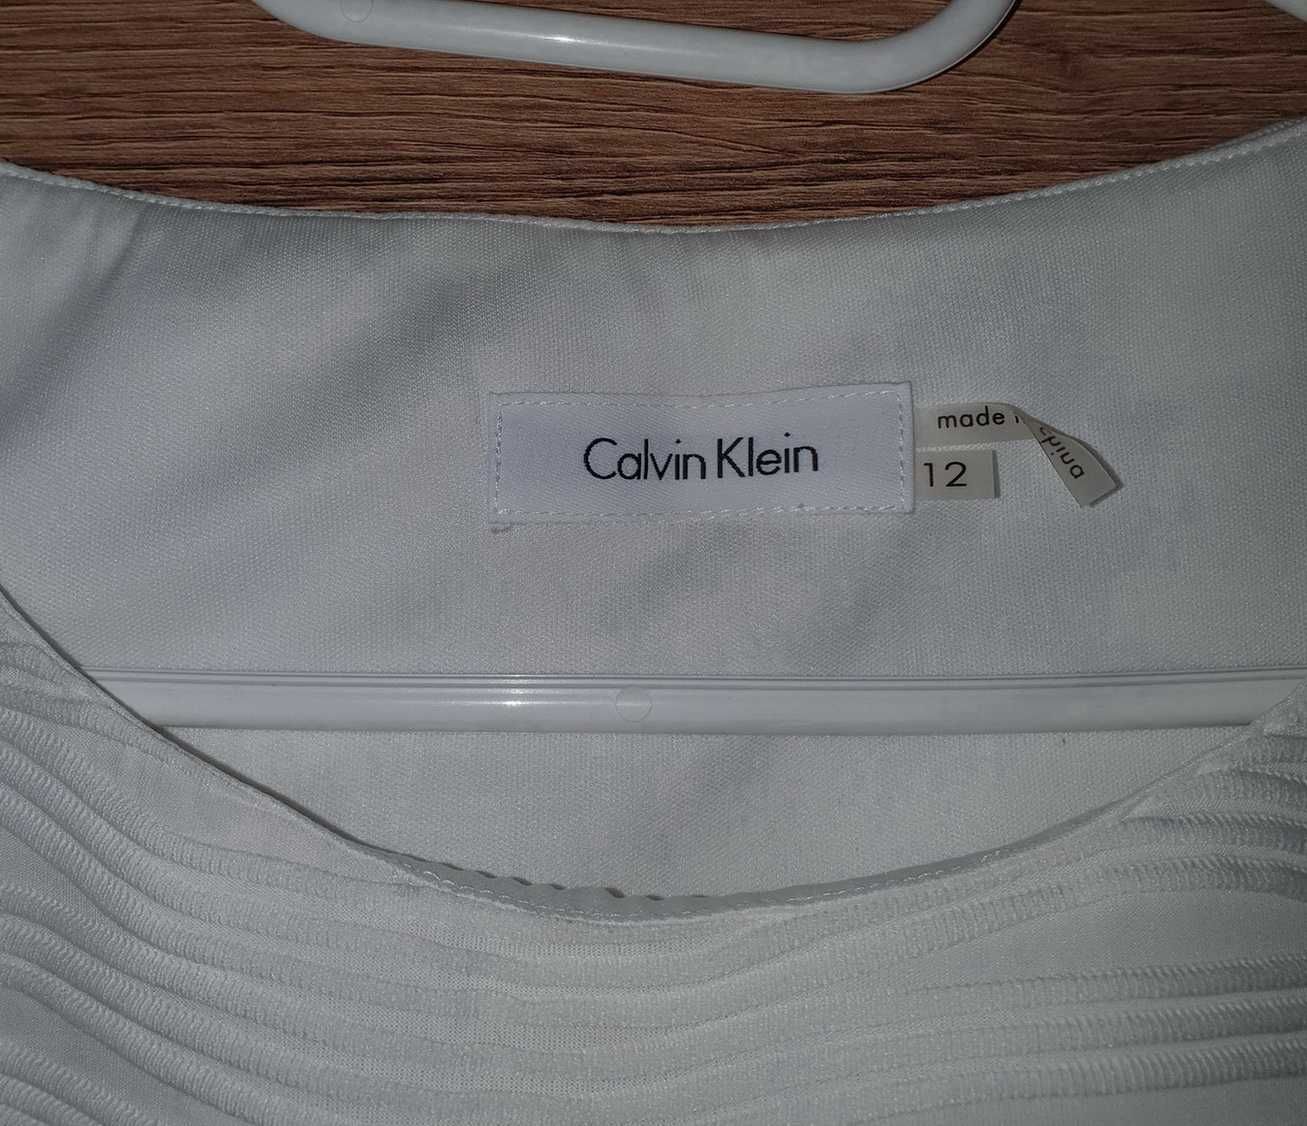 Bluzka biała, rozmiar 12, Calvin Klein